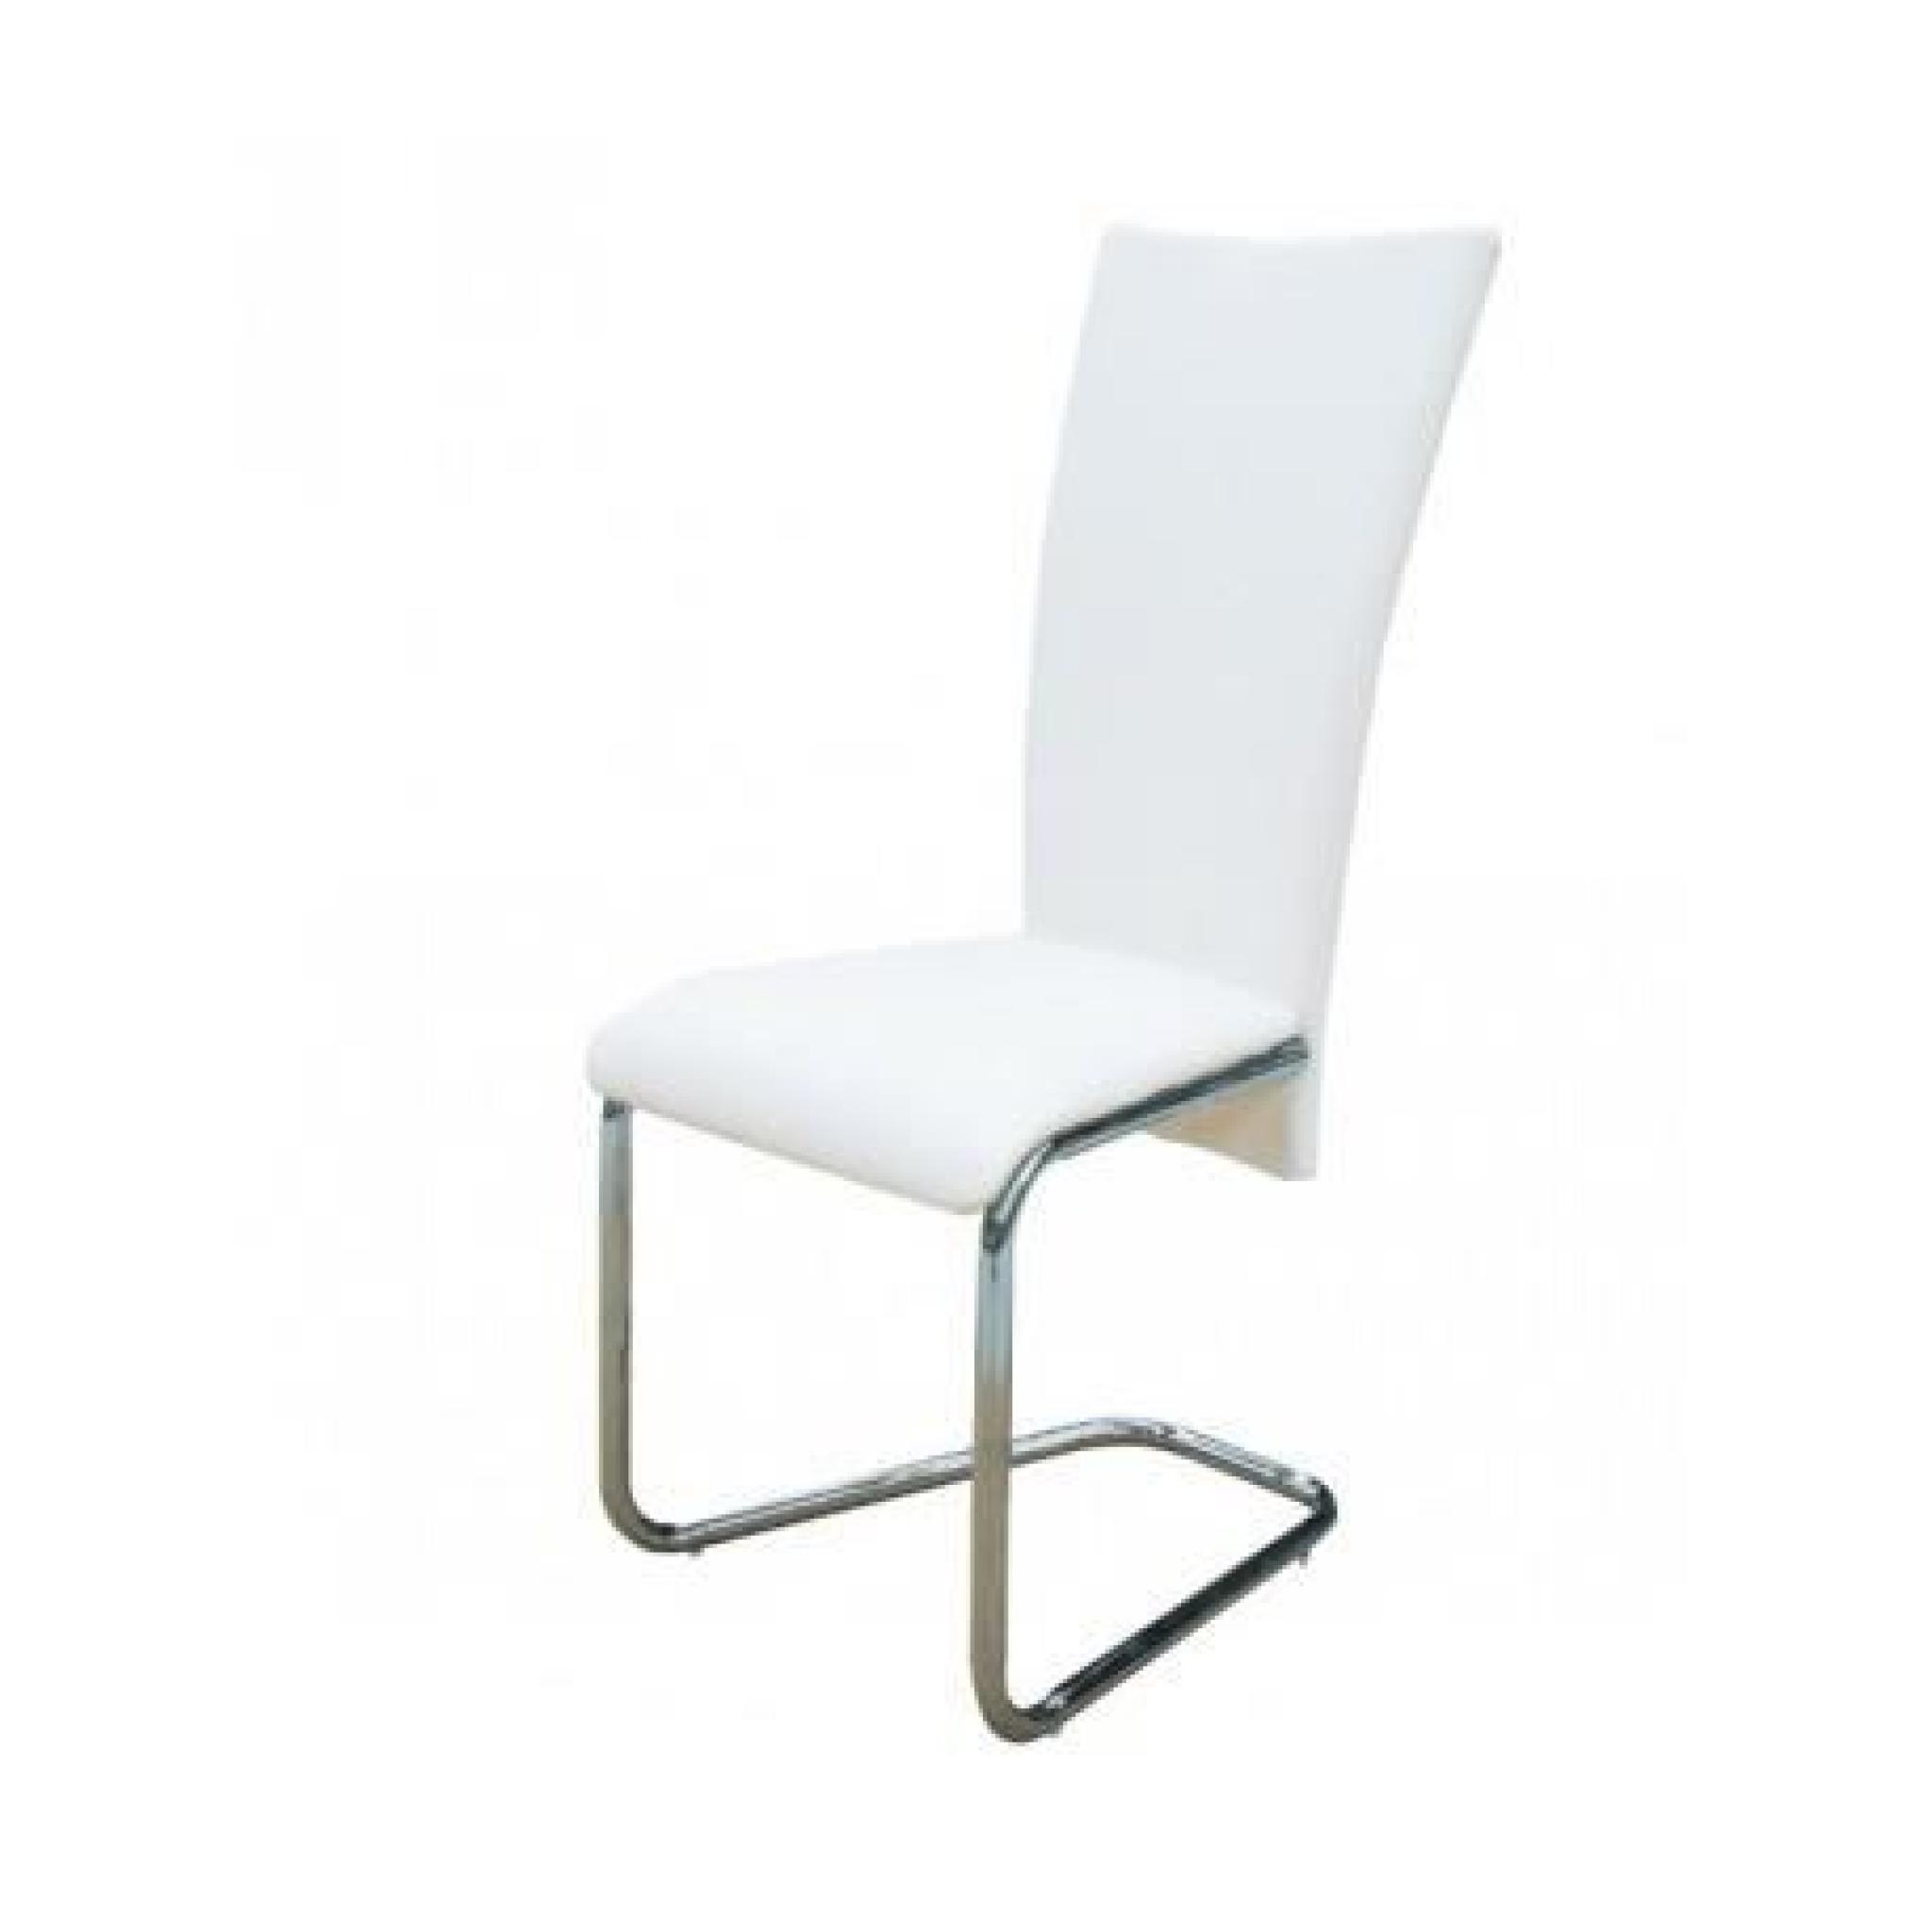 6 Chaises en métal design (Blanc) Maja+ pas cher